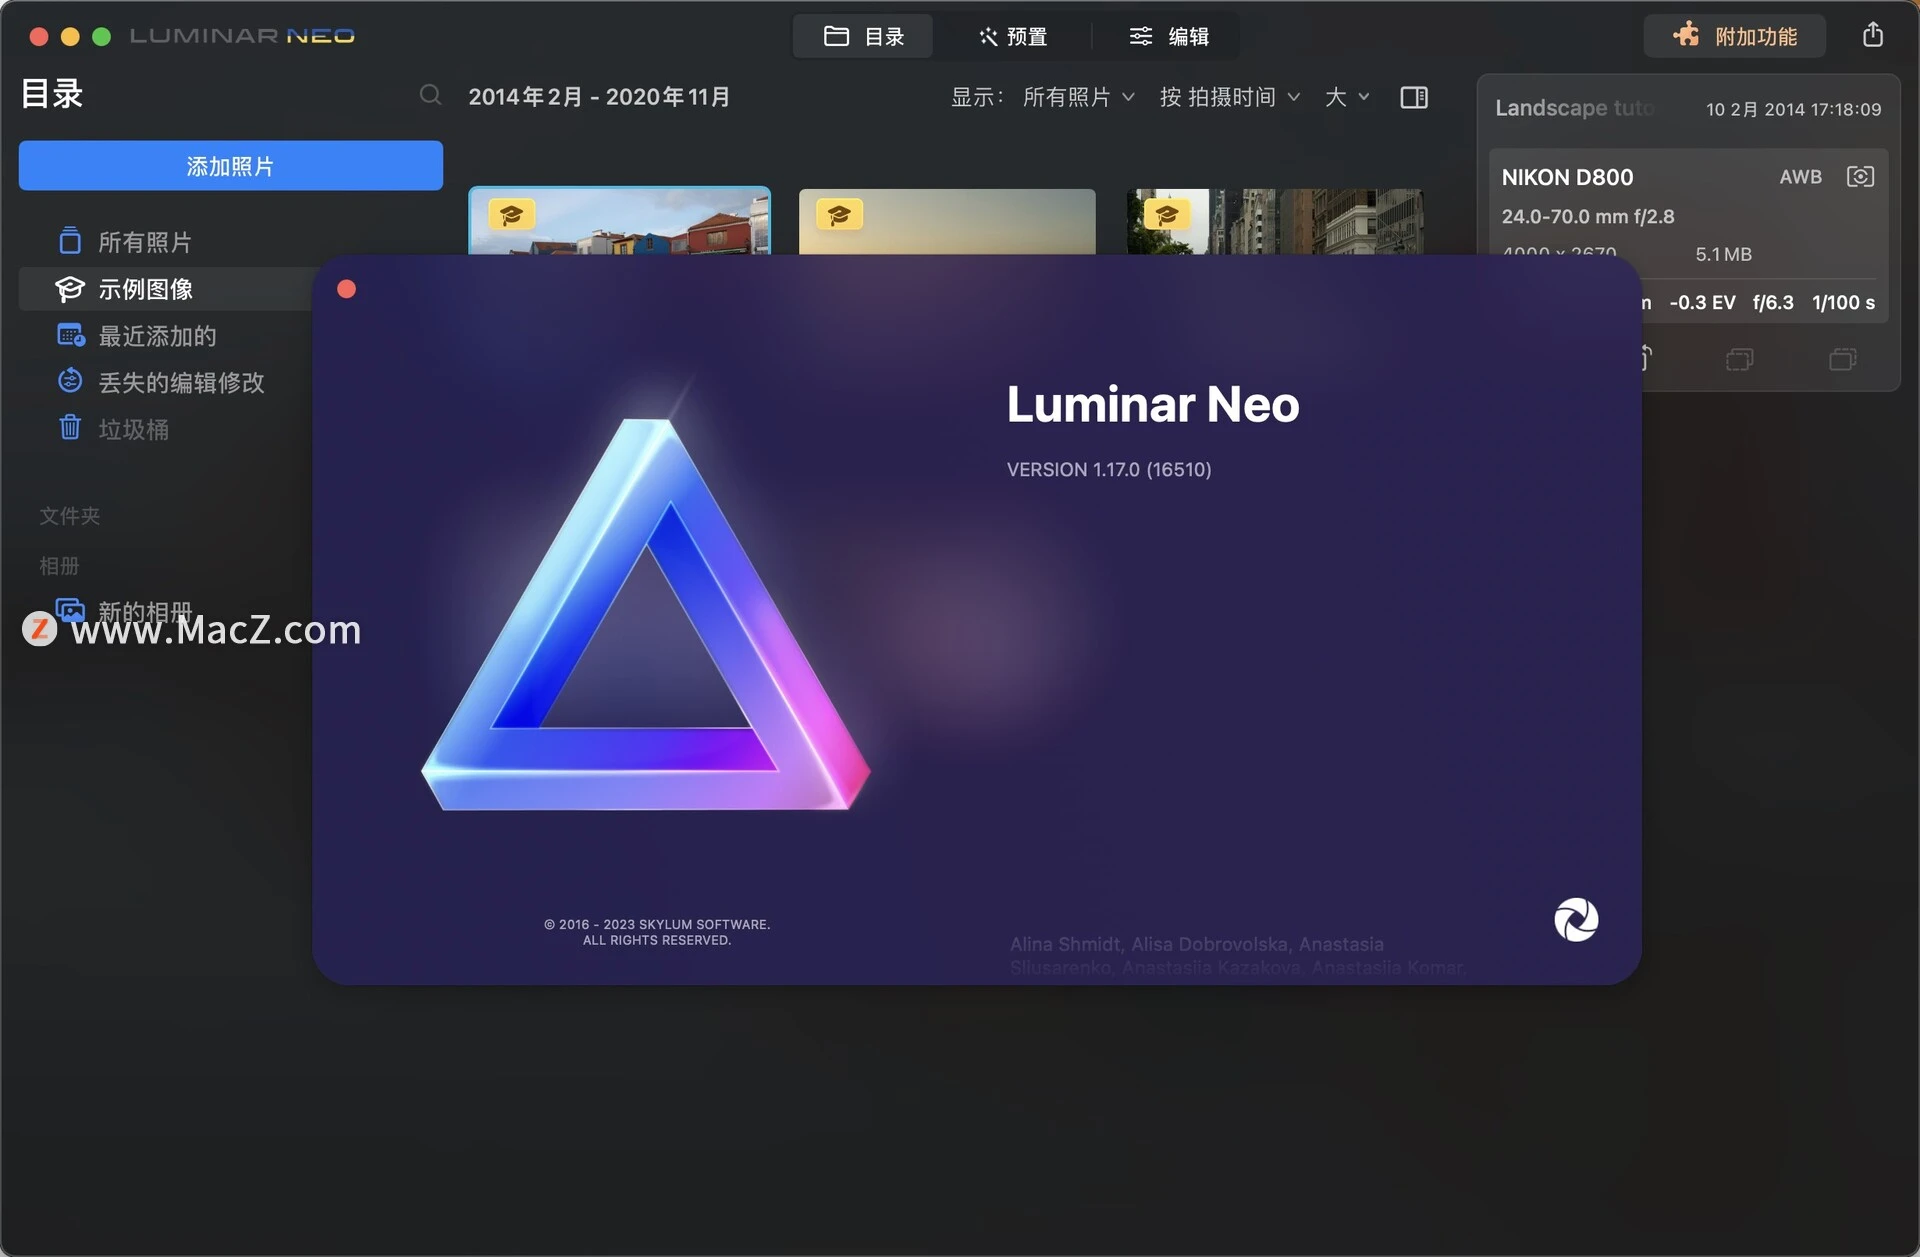 释放创意,掌握未来——Luminar Neo Mac/win 创意图片编辑器